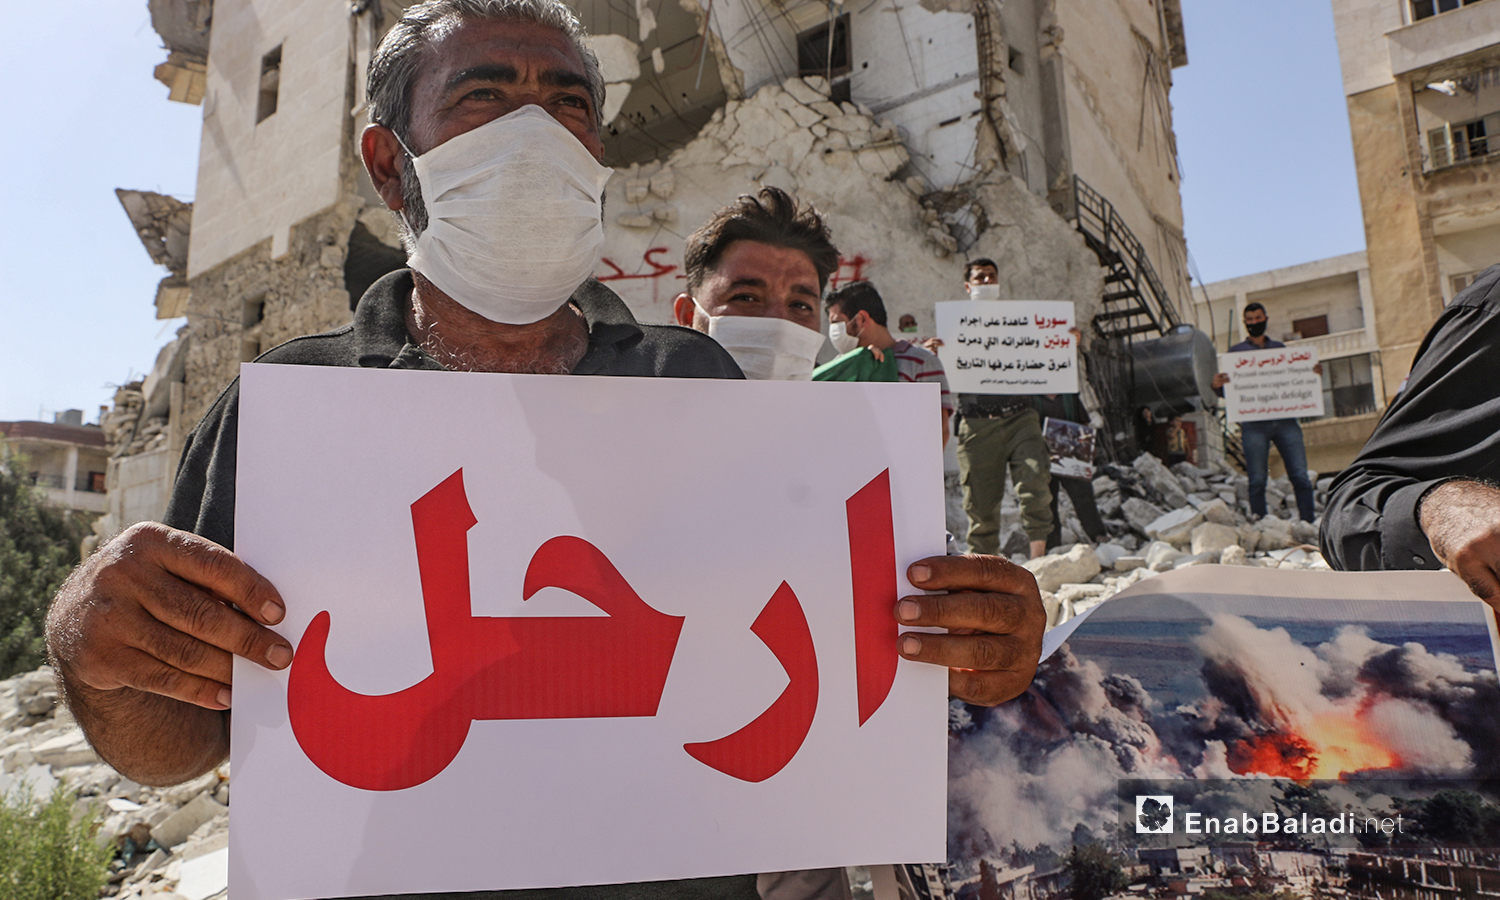 رجل يحمل لوحة كتب عليها: ارحل في الذكرى الخامسة للتدخل الروسي في سوريا في مدينة إدلب - 30 أيلول 2020 (عنب بلدي /أنس الخولي)